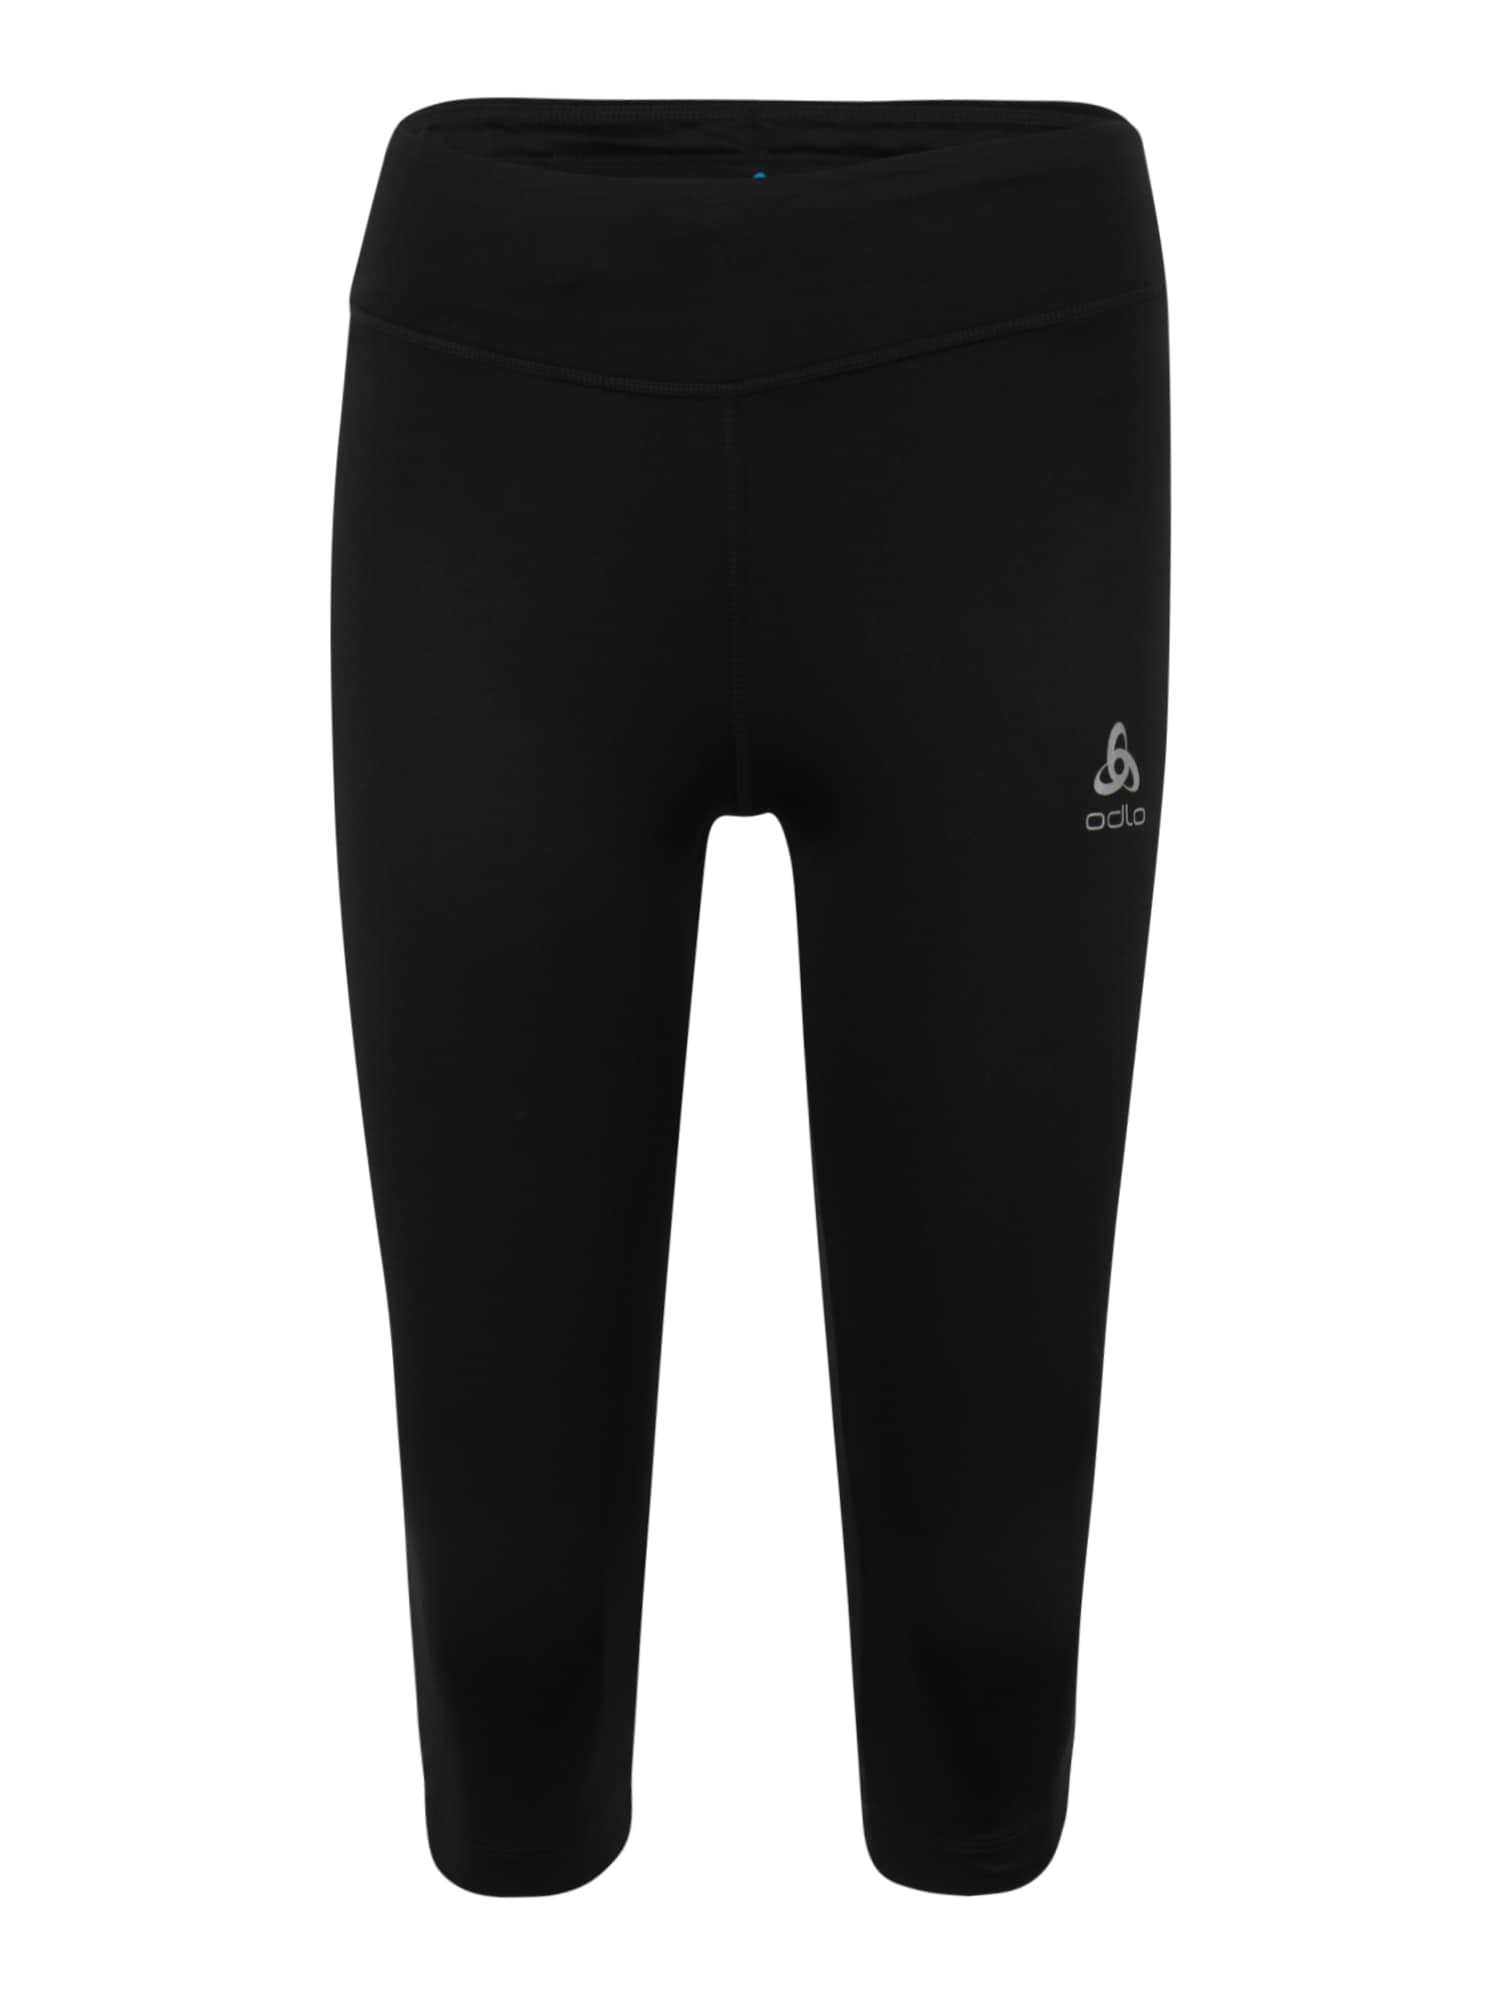 ODLO Sportinės kelnės 'Essential' šviesiai pilka / juoda